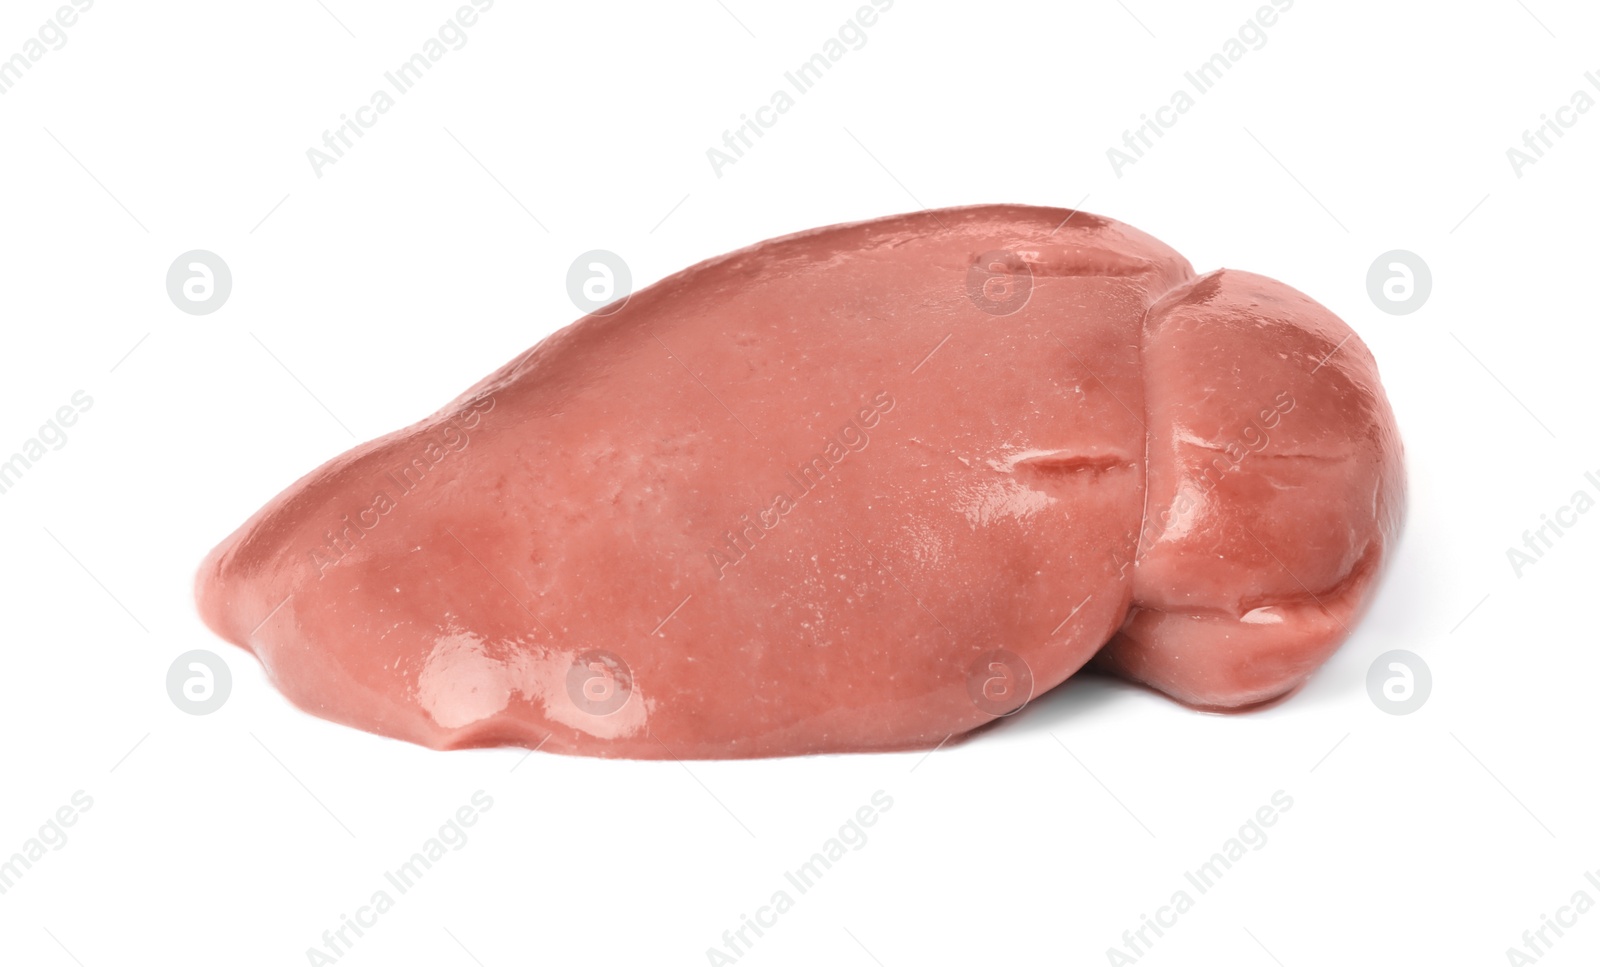 Photo of Fresh raw pork kidney on white background